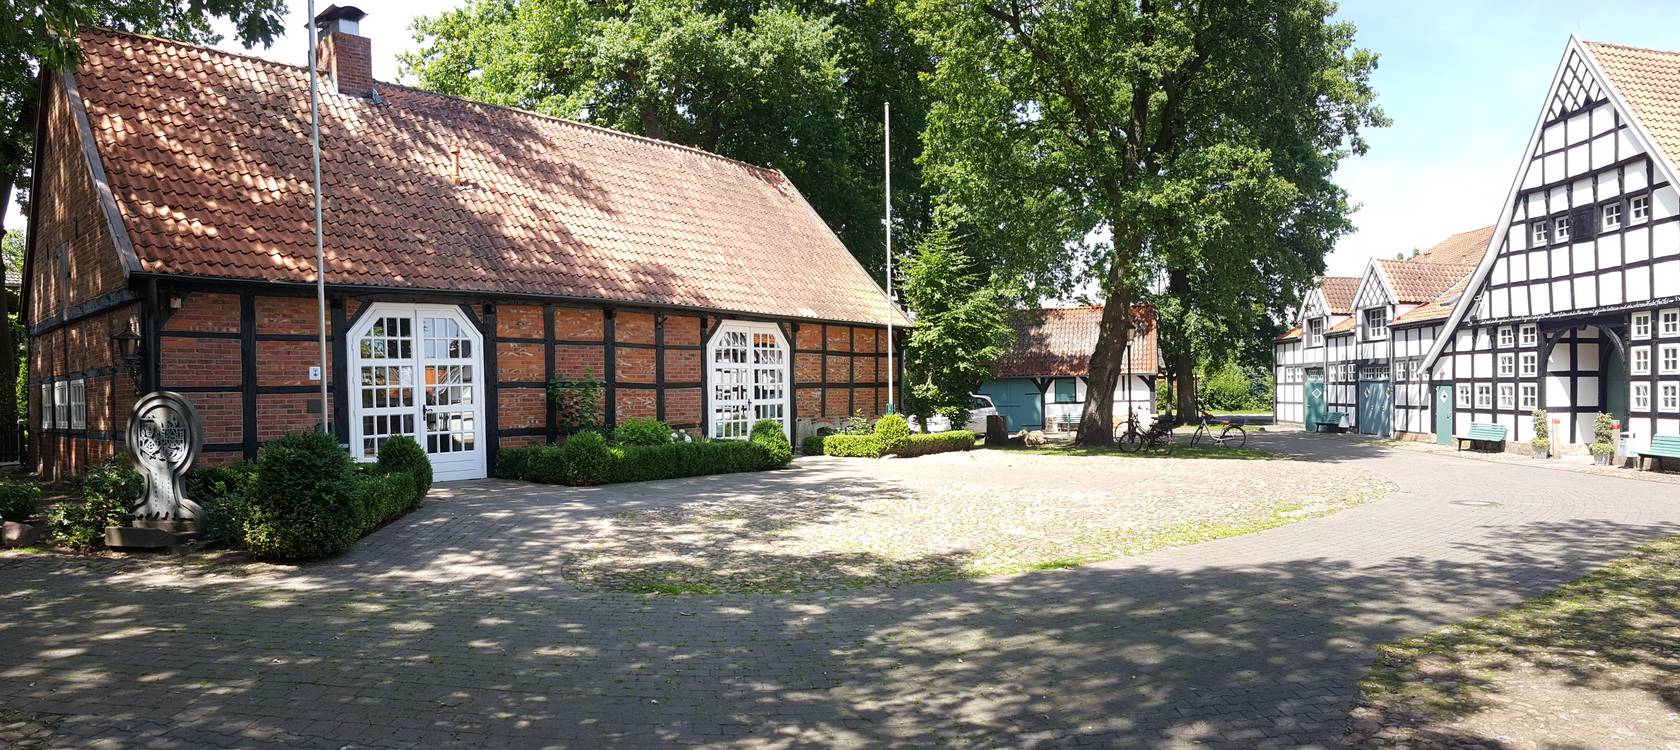 Der Wöhlehof in Spelle: Vom Bauernhof zum Vereins- und Kulturzentrum